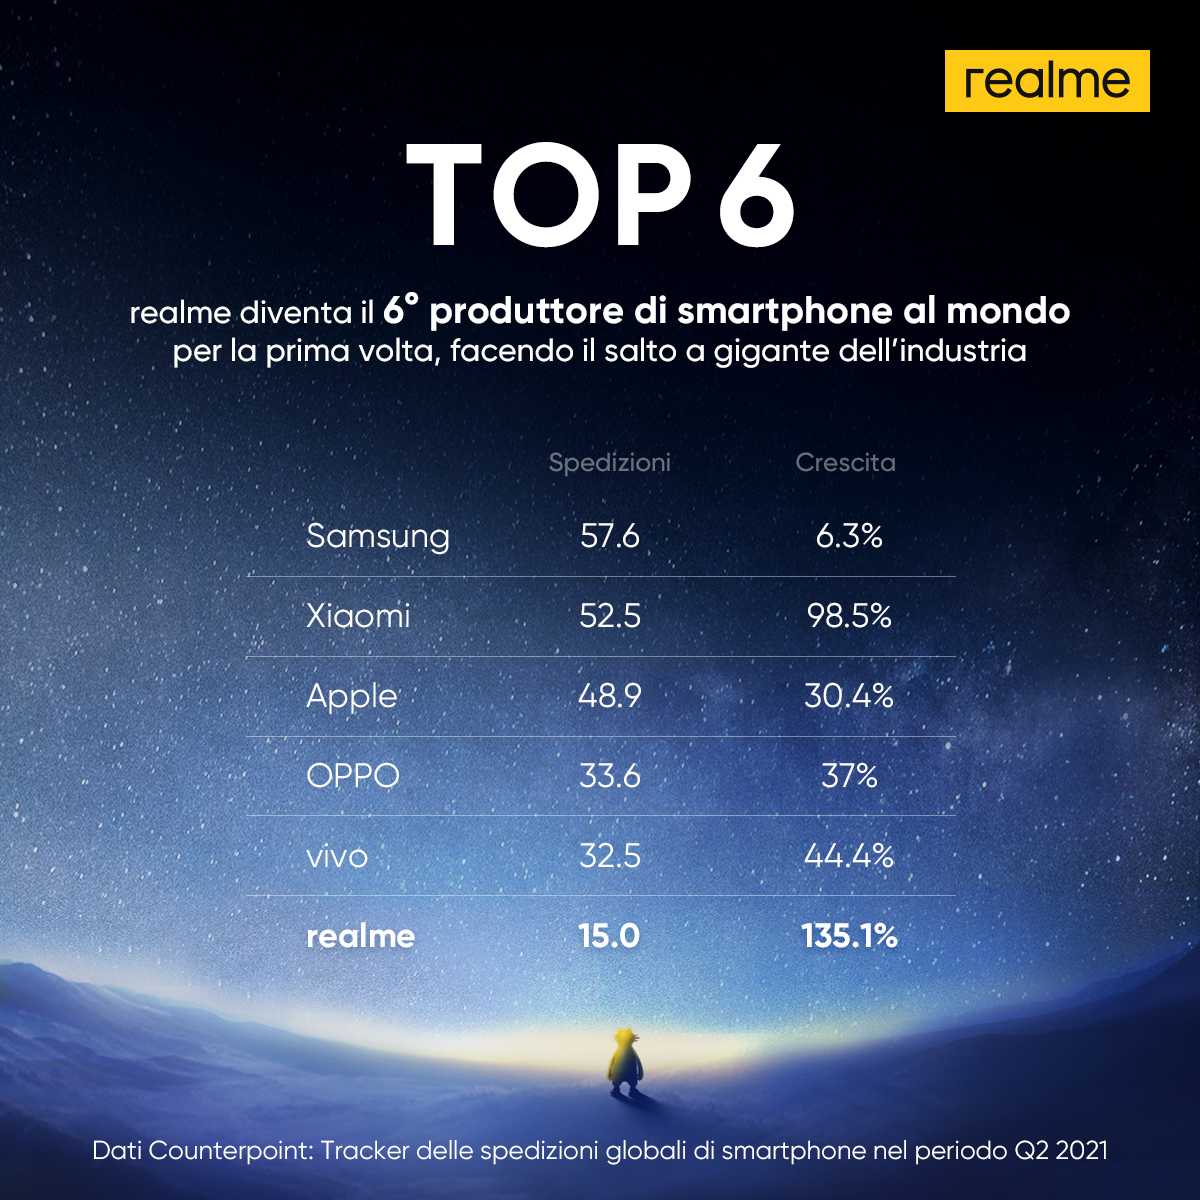 realme: è in sesta posizione nella classifica globale degli smartphone